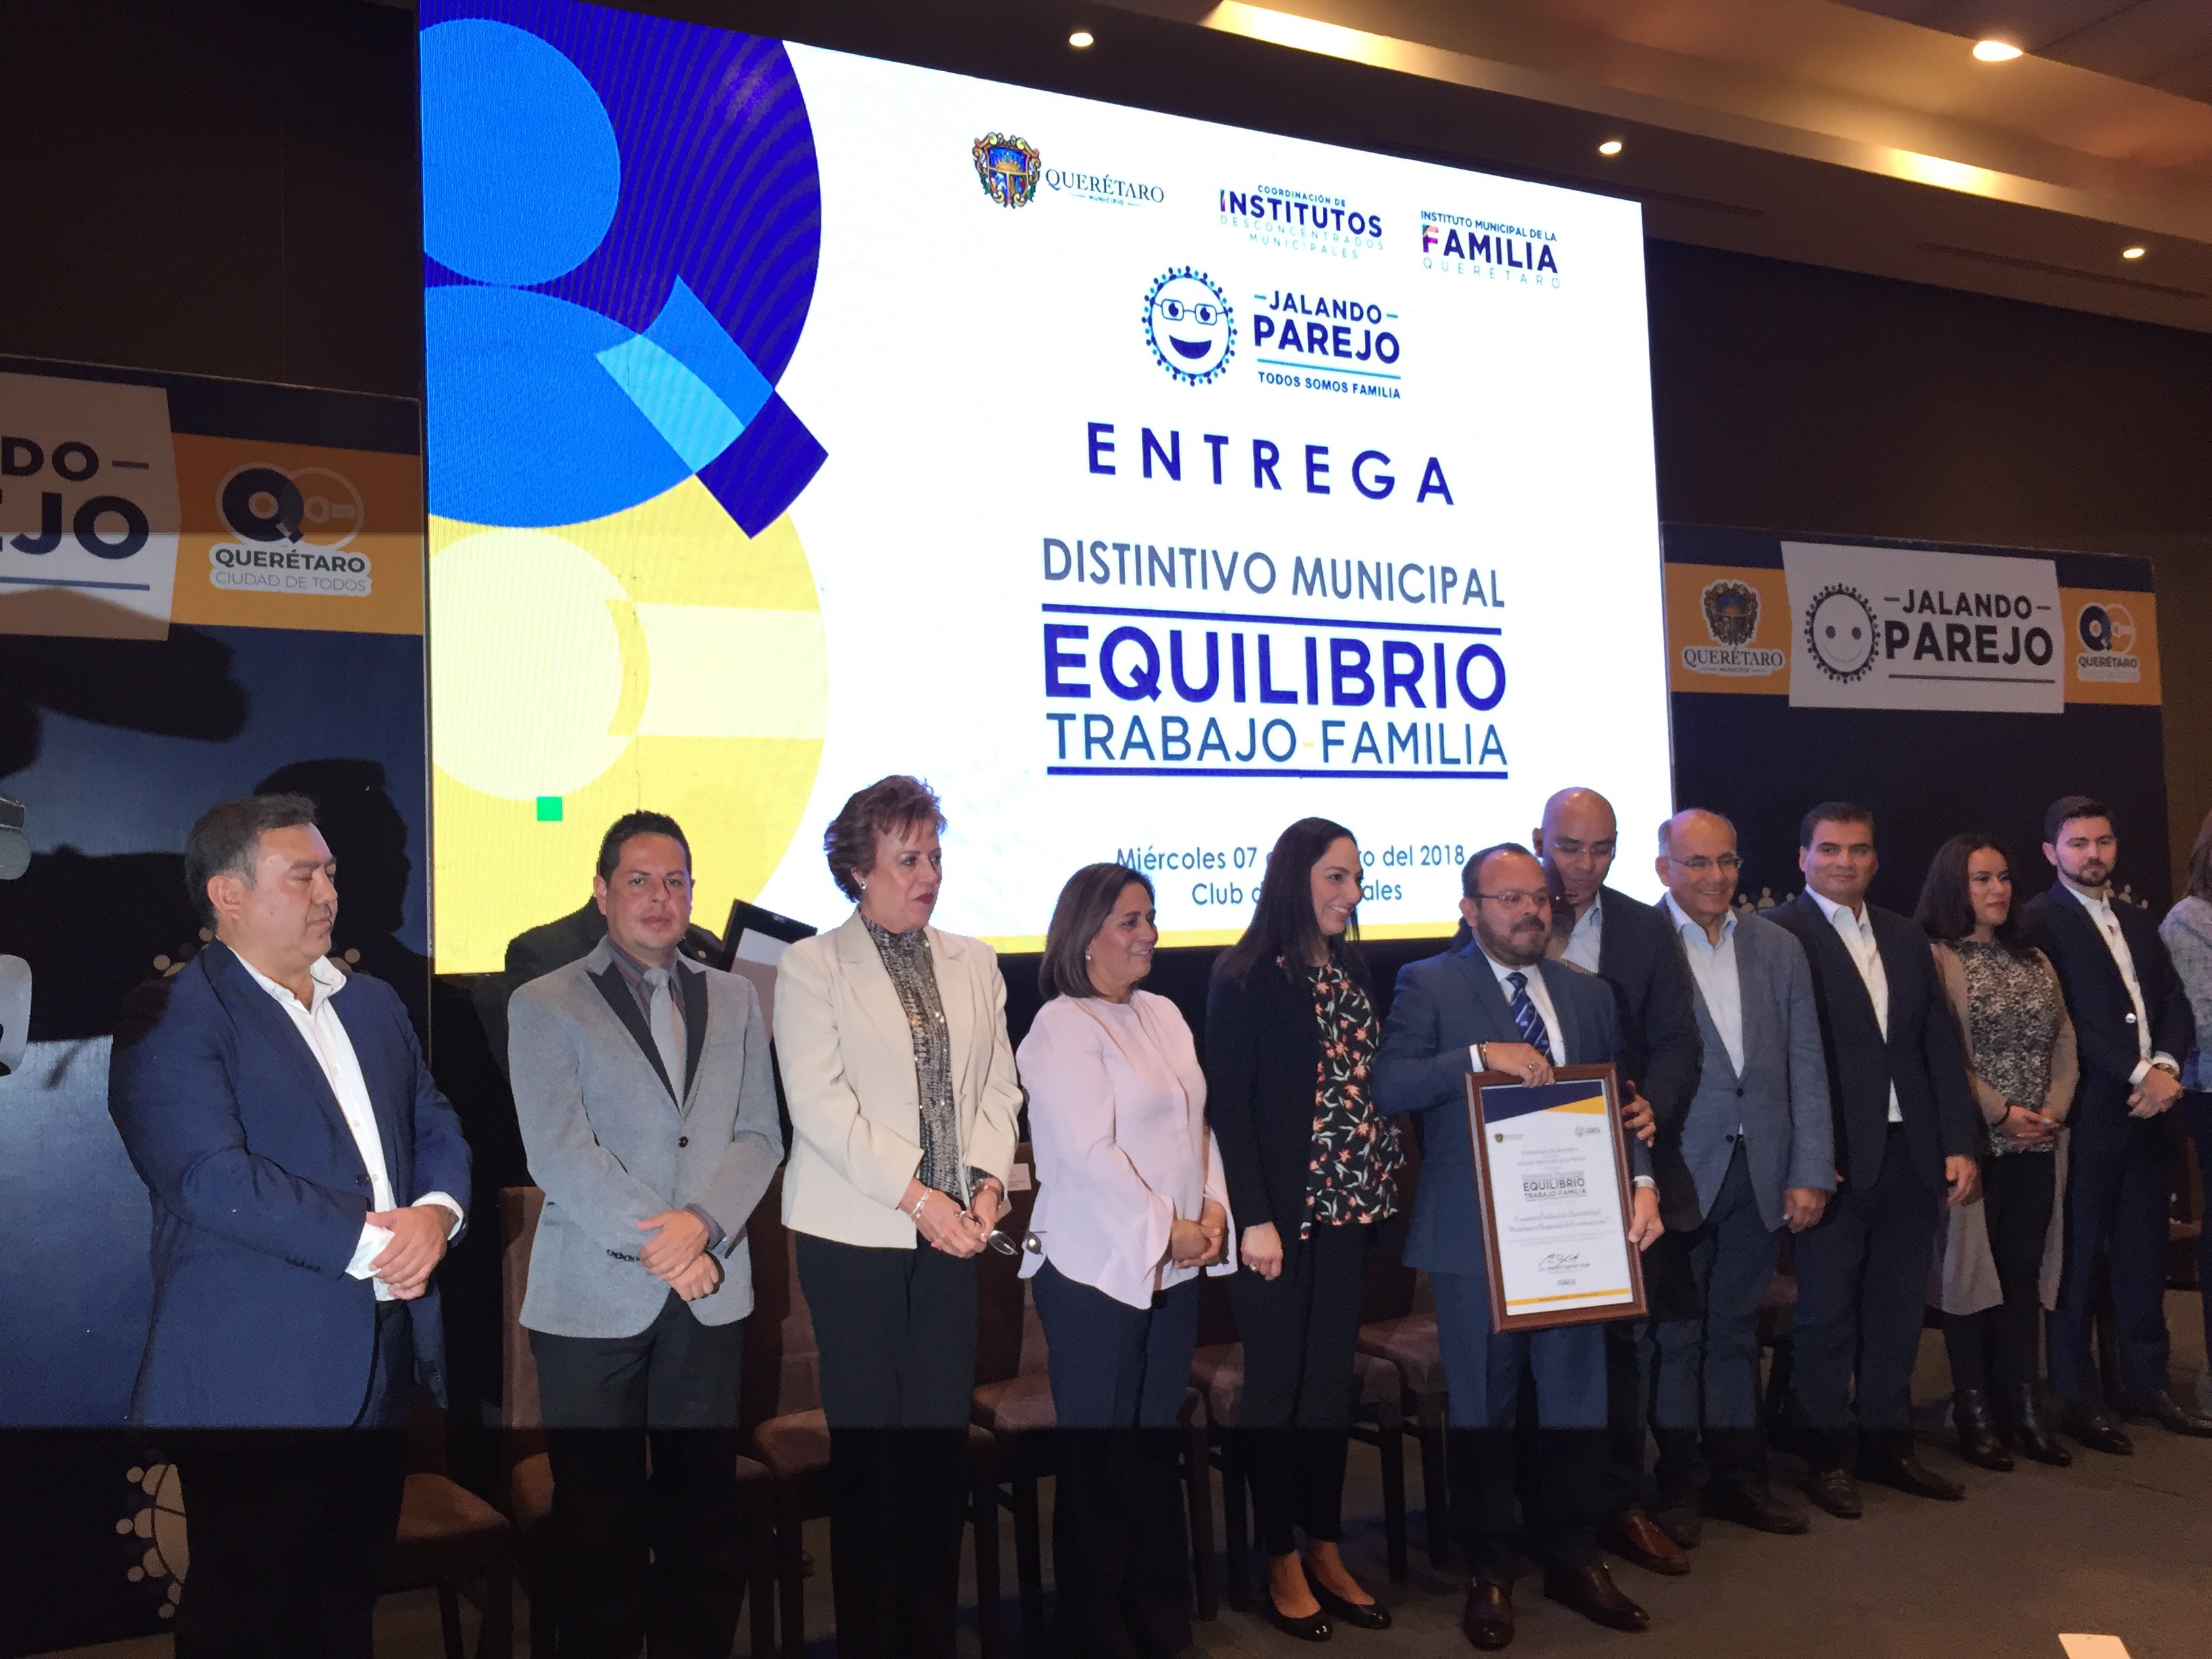  Municipio de Querétaro reconoce a 39 instituciones por fomentar el equilibrio trabajo-familia